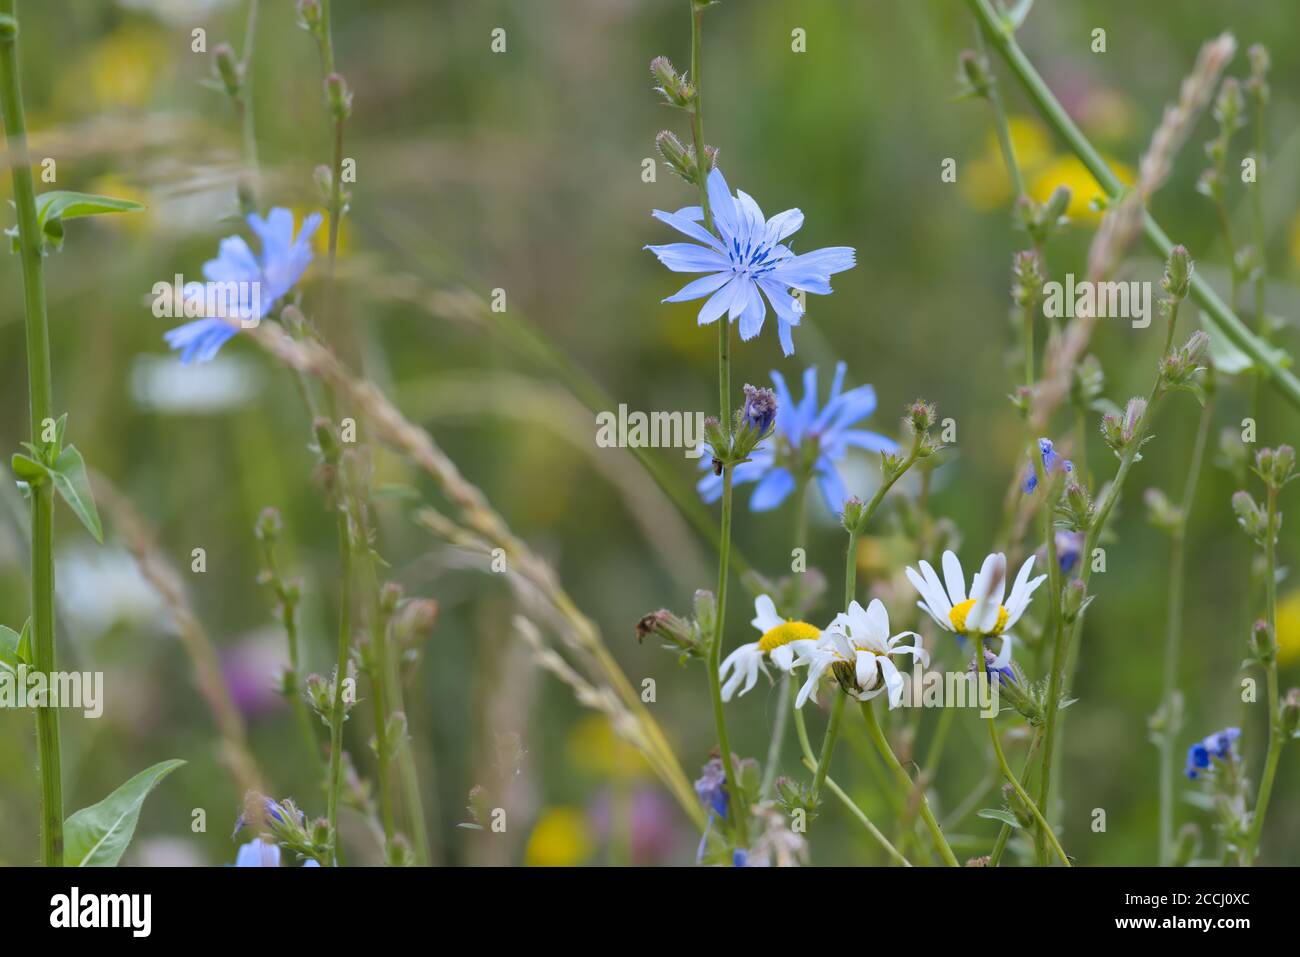 7 - image multicolore de nombreuses fleurs de prairie. Gros plan perspective, la fleur de chicorée bleue est le foyer. Les daises sont trop présentes devant un fond vert Banque D'Images